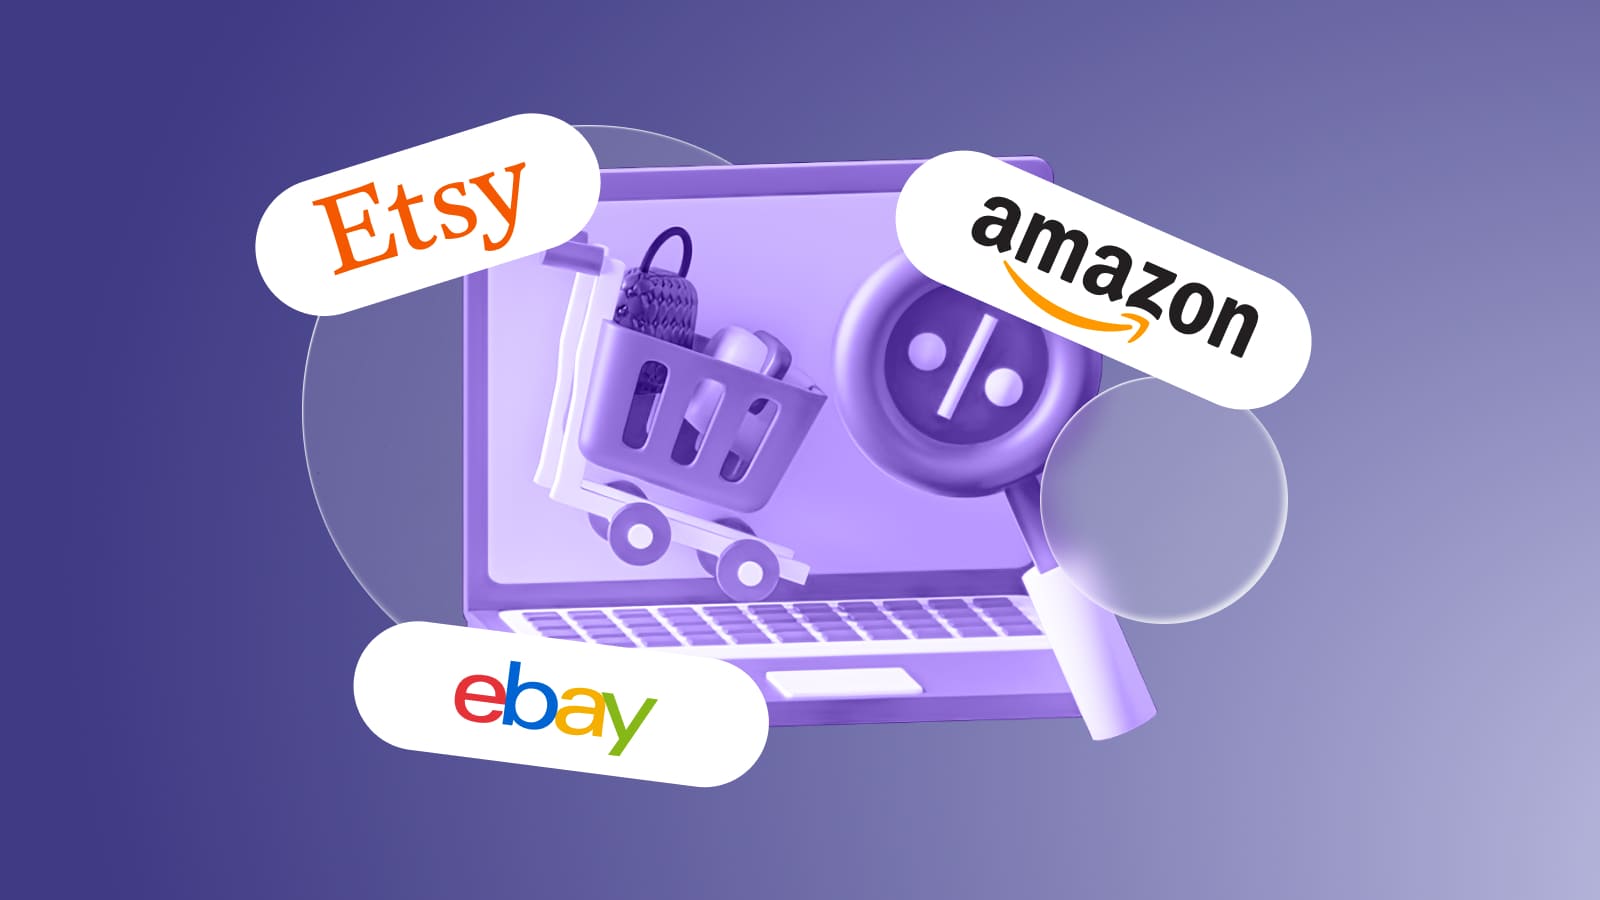 Международные маркетплейсы Amazon, Etsy и Ebay для выхода на мировой рынок.